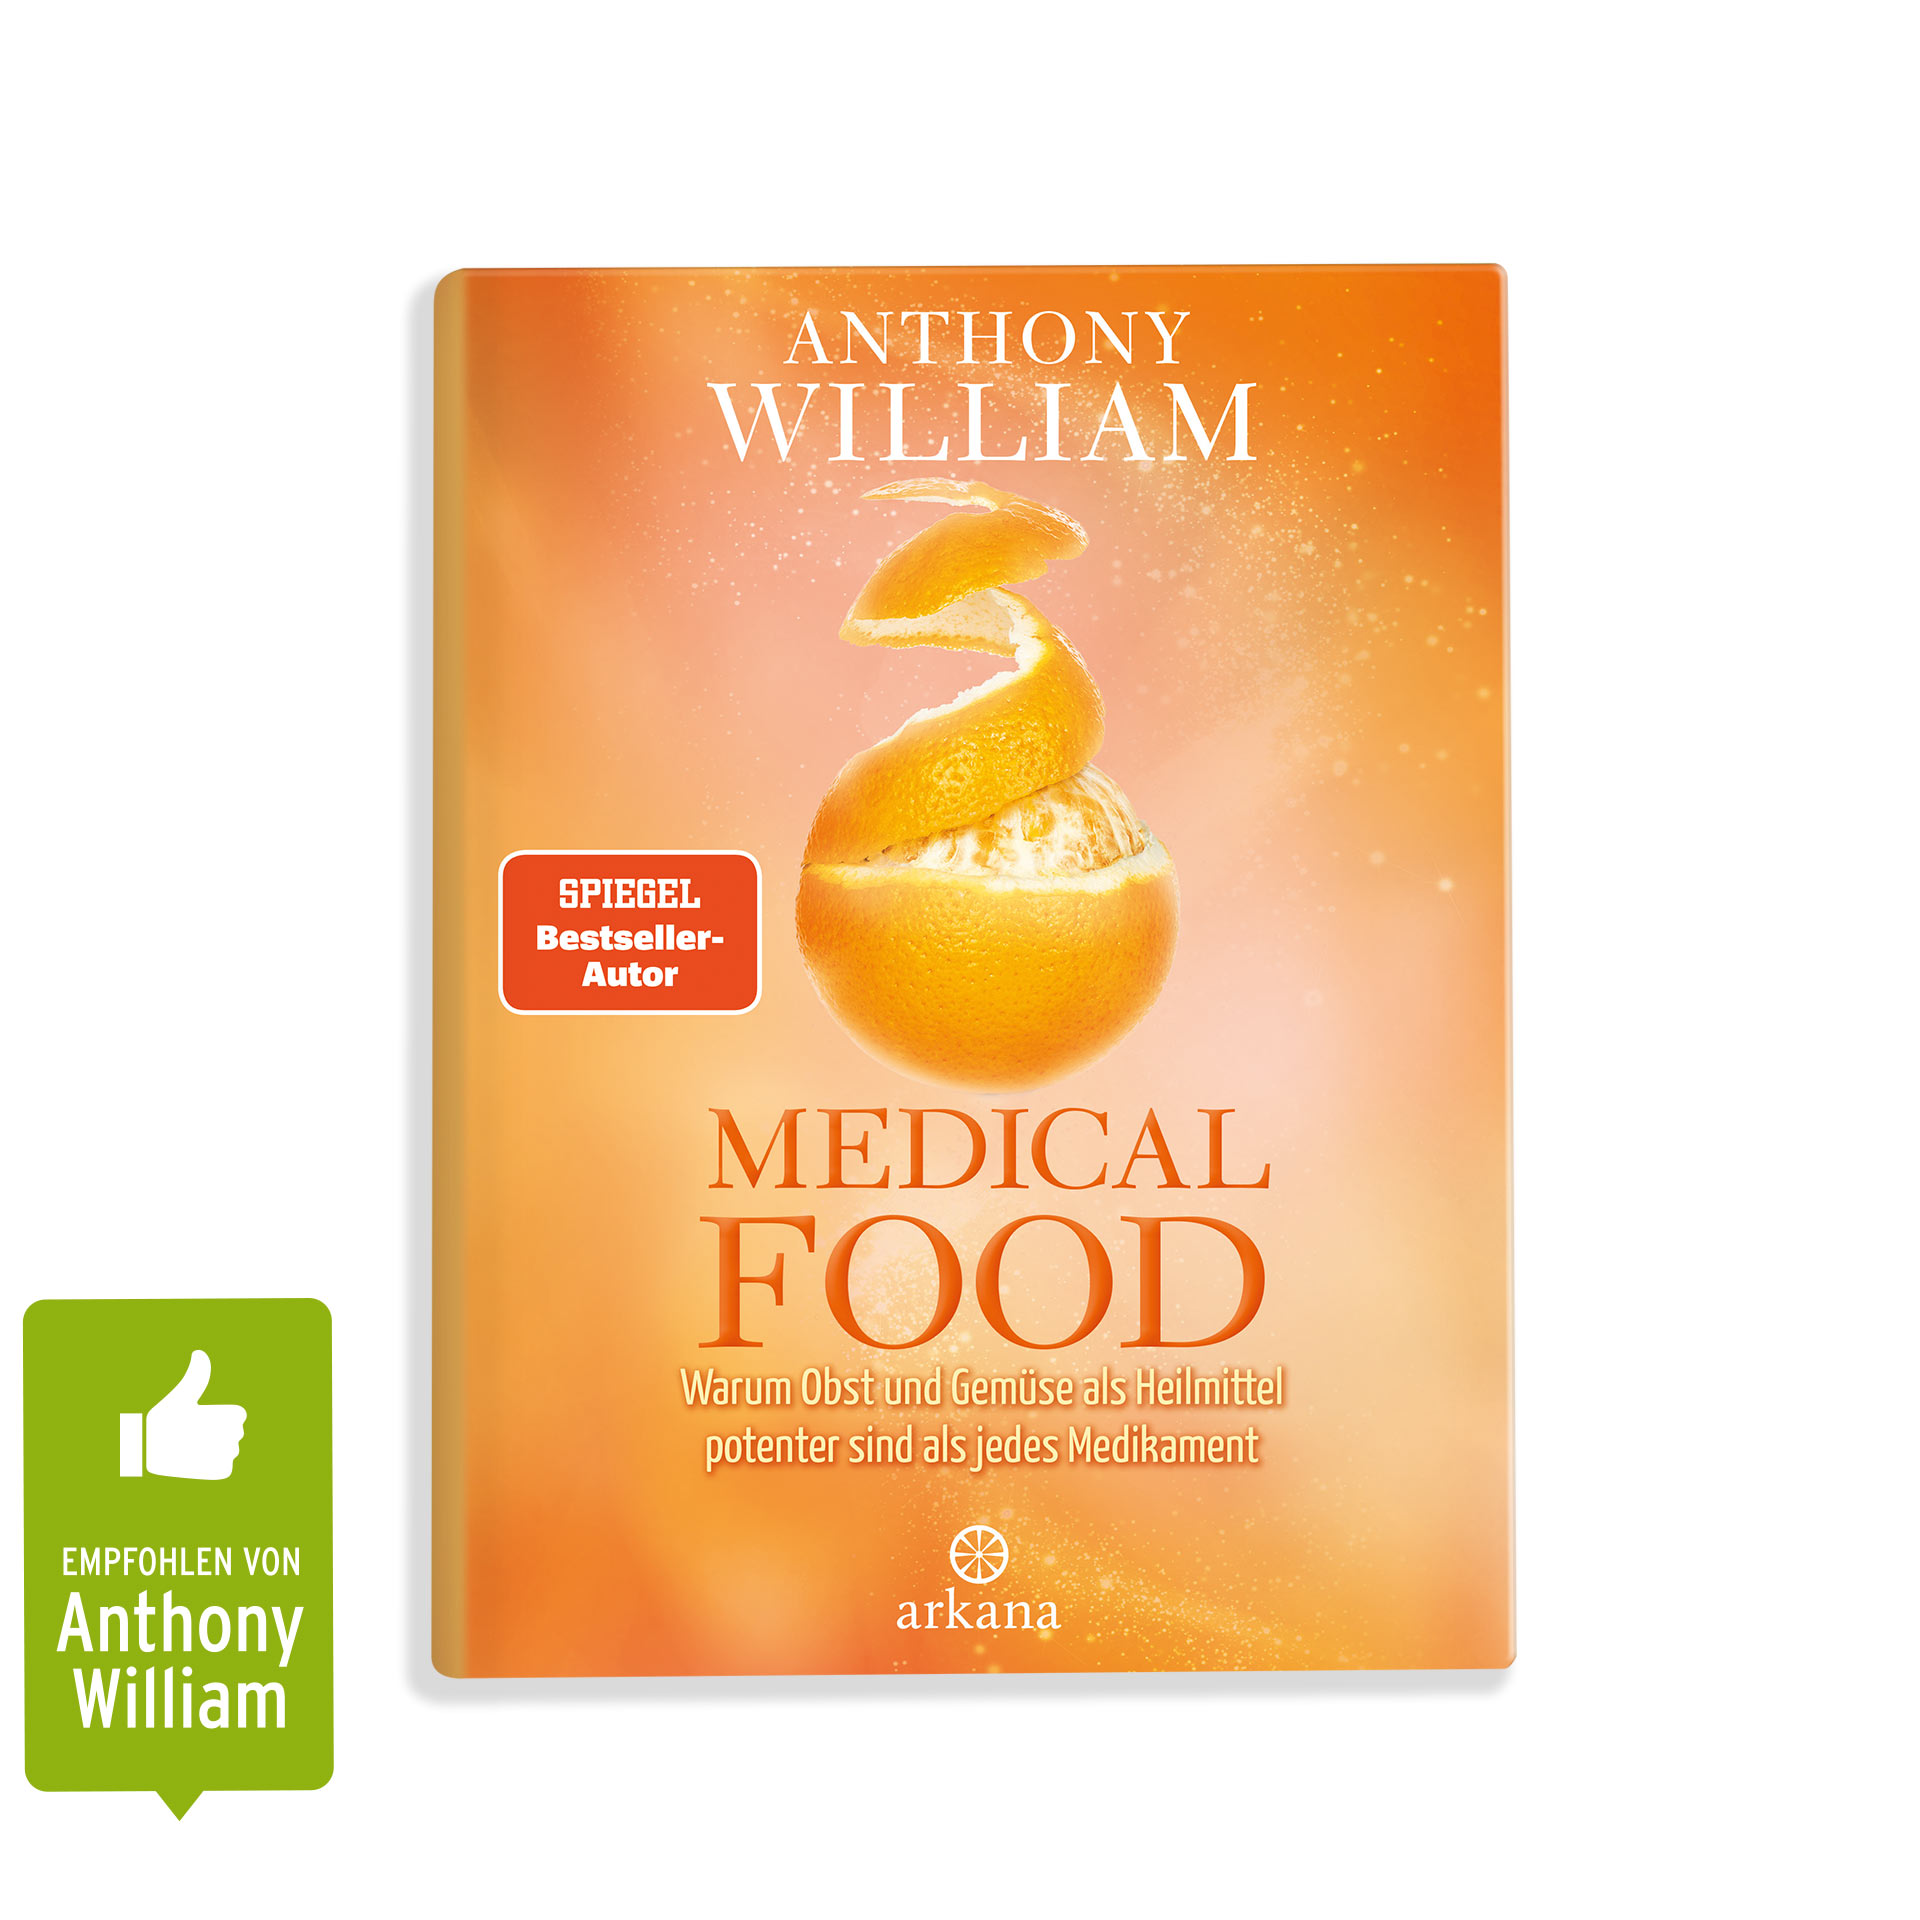 Buch “Medical Food” von Anthony William